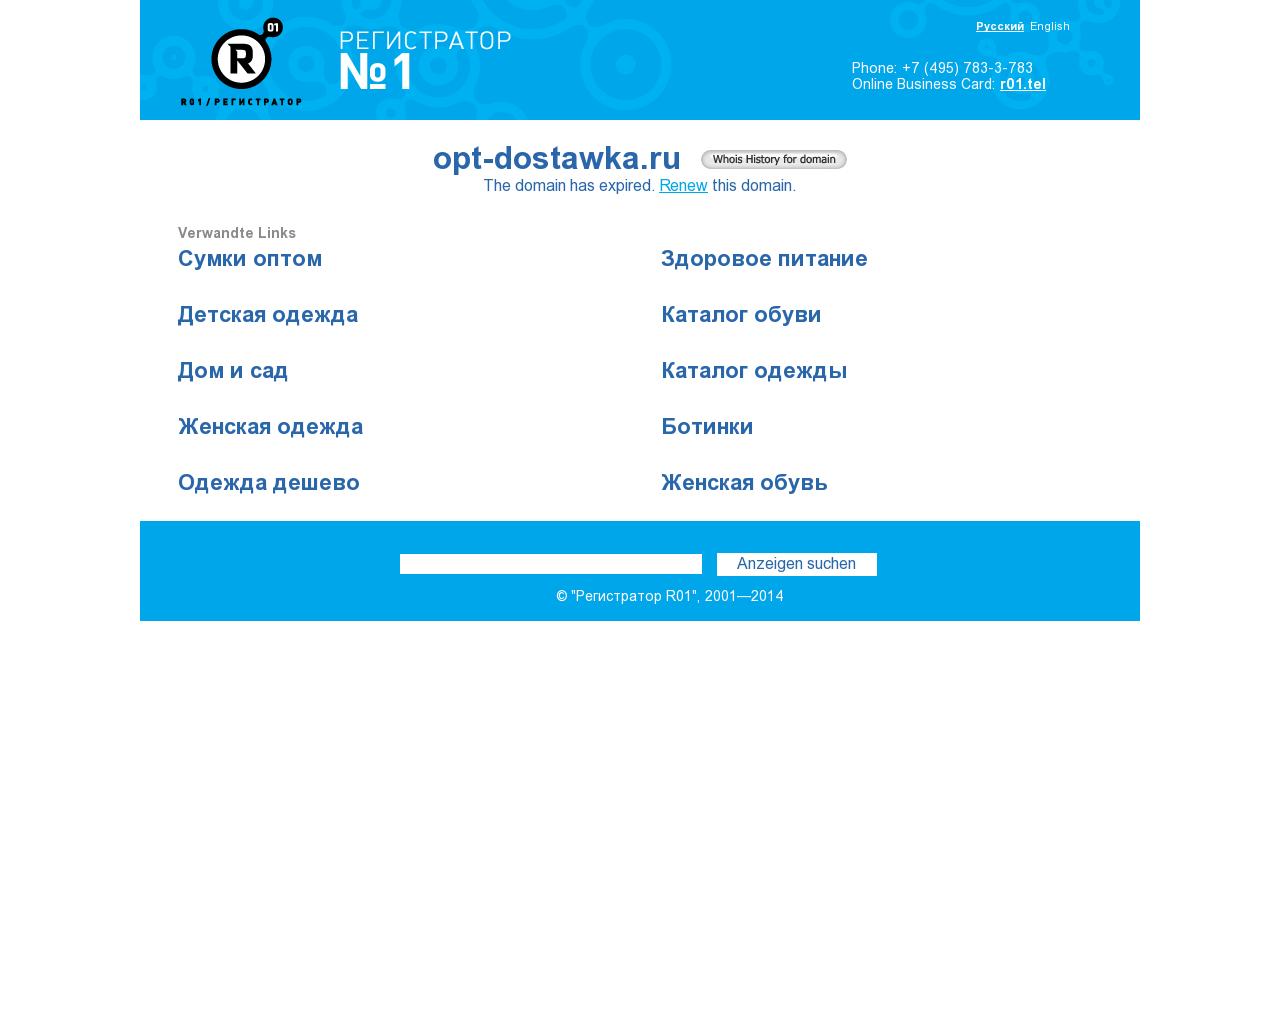 Изображение сайта opt-dostawka.ru в разрешении 1280x1024